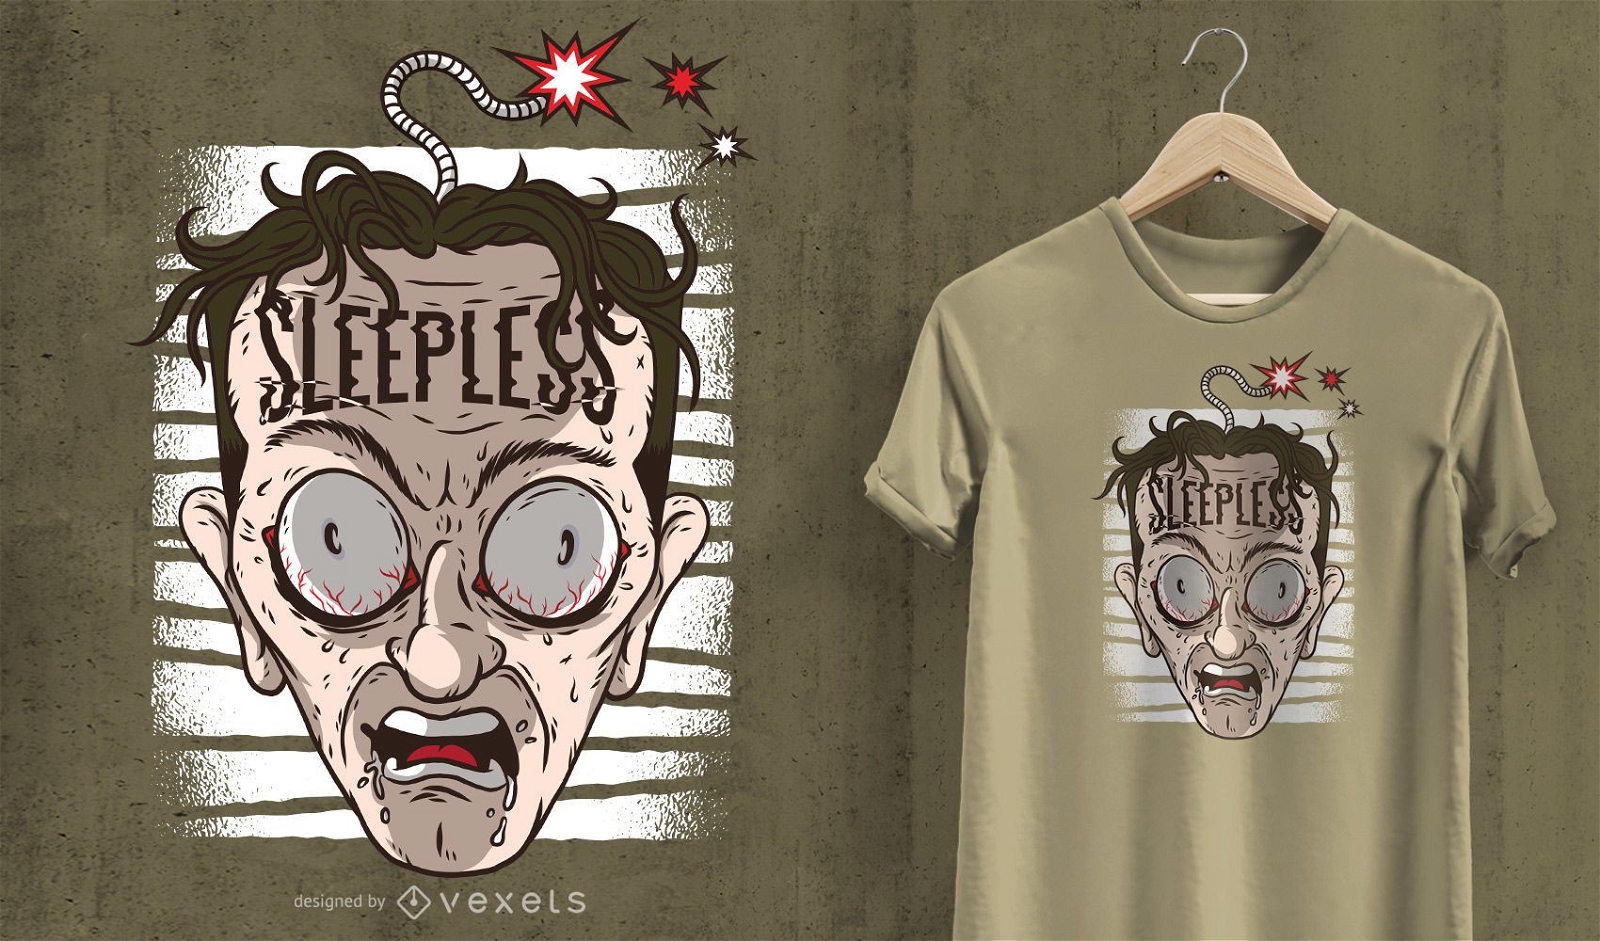 Sleepless head t-shirt design